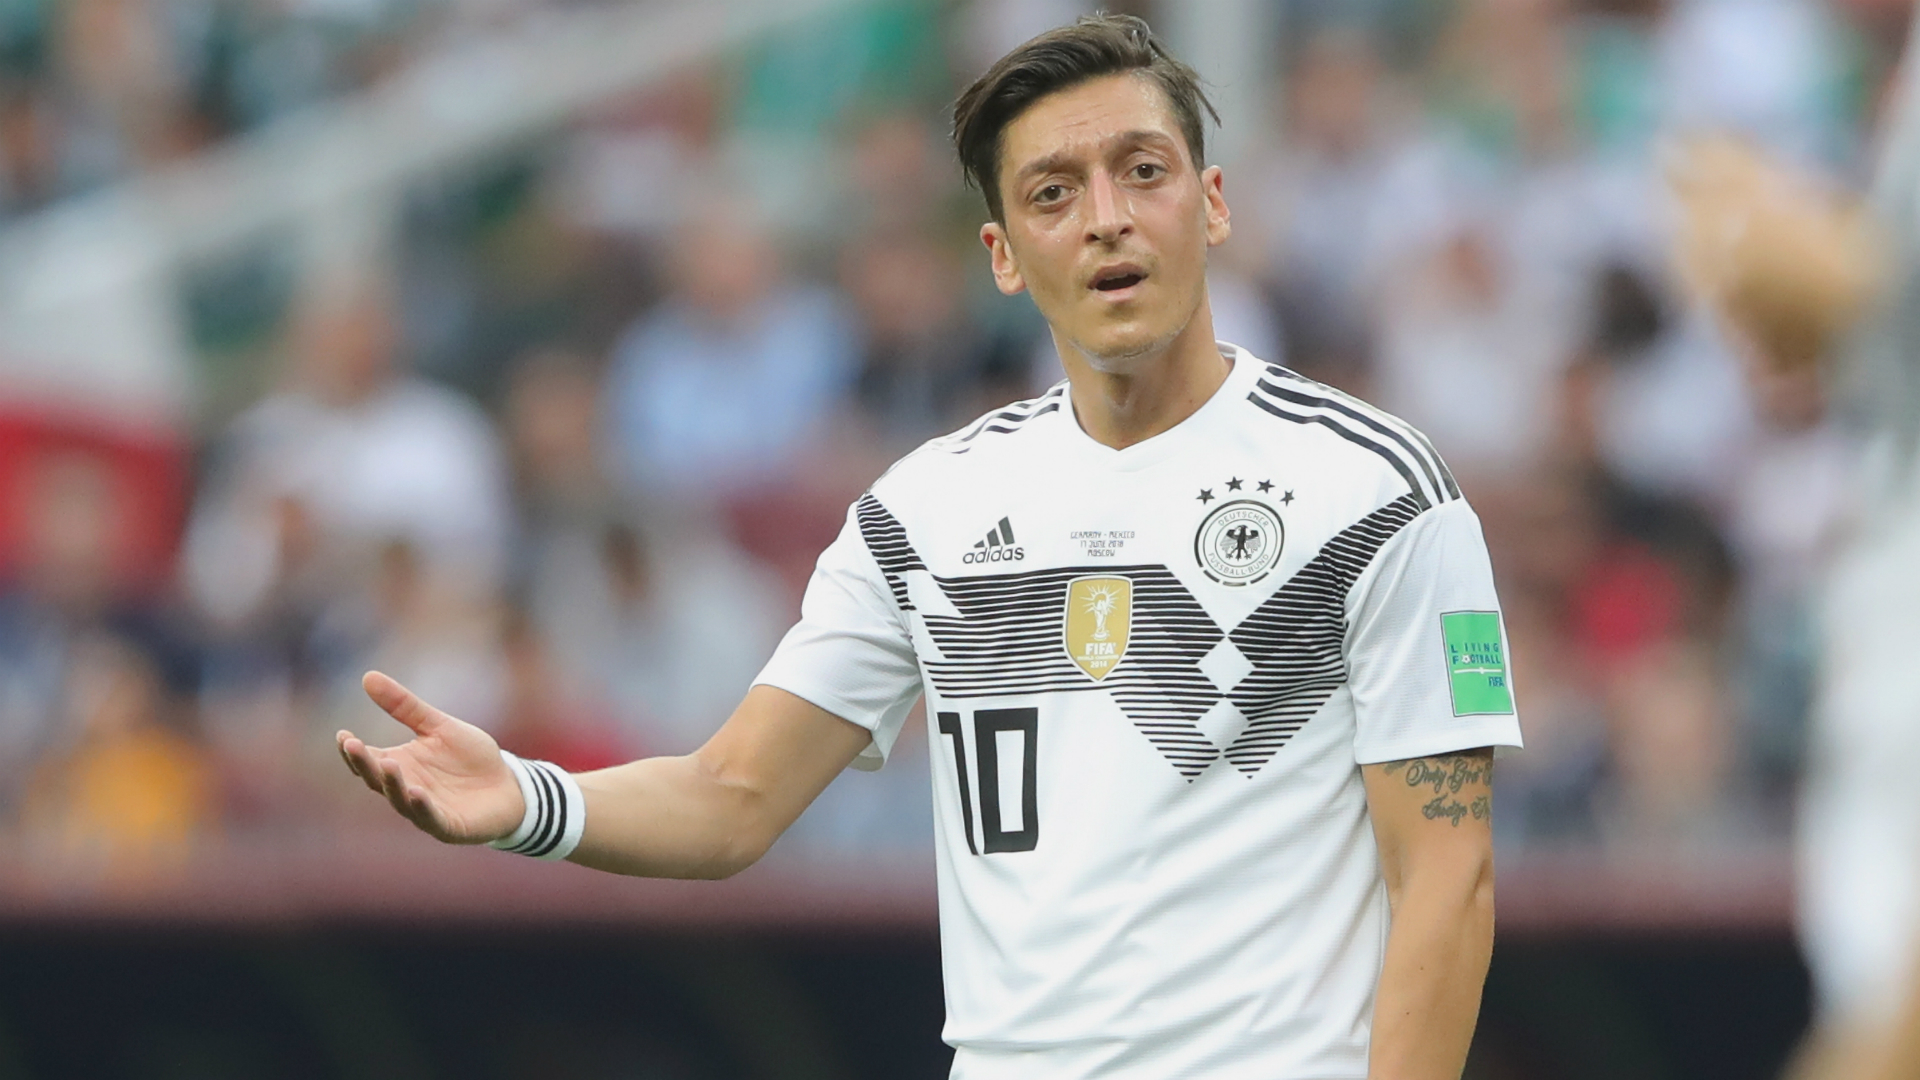 สมาคมฟุตบอลเยอรมัน ออกมายอมรับผิด จับ “โอซิล” ให้เป็นแพะรับบาปในศึกฟุตบอลโลก 2018 ส่งผลให้นักเตะเลิกเล่นทีมชาติ